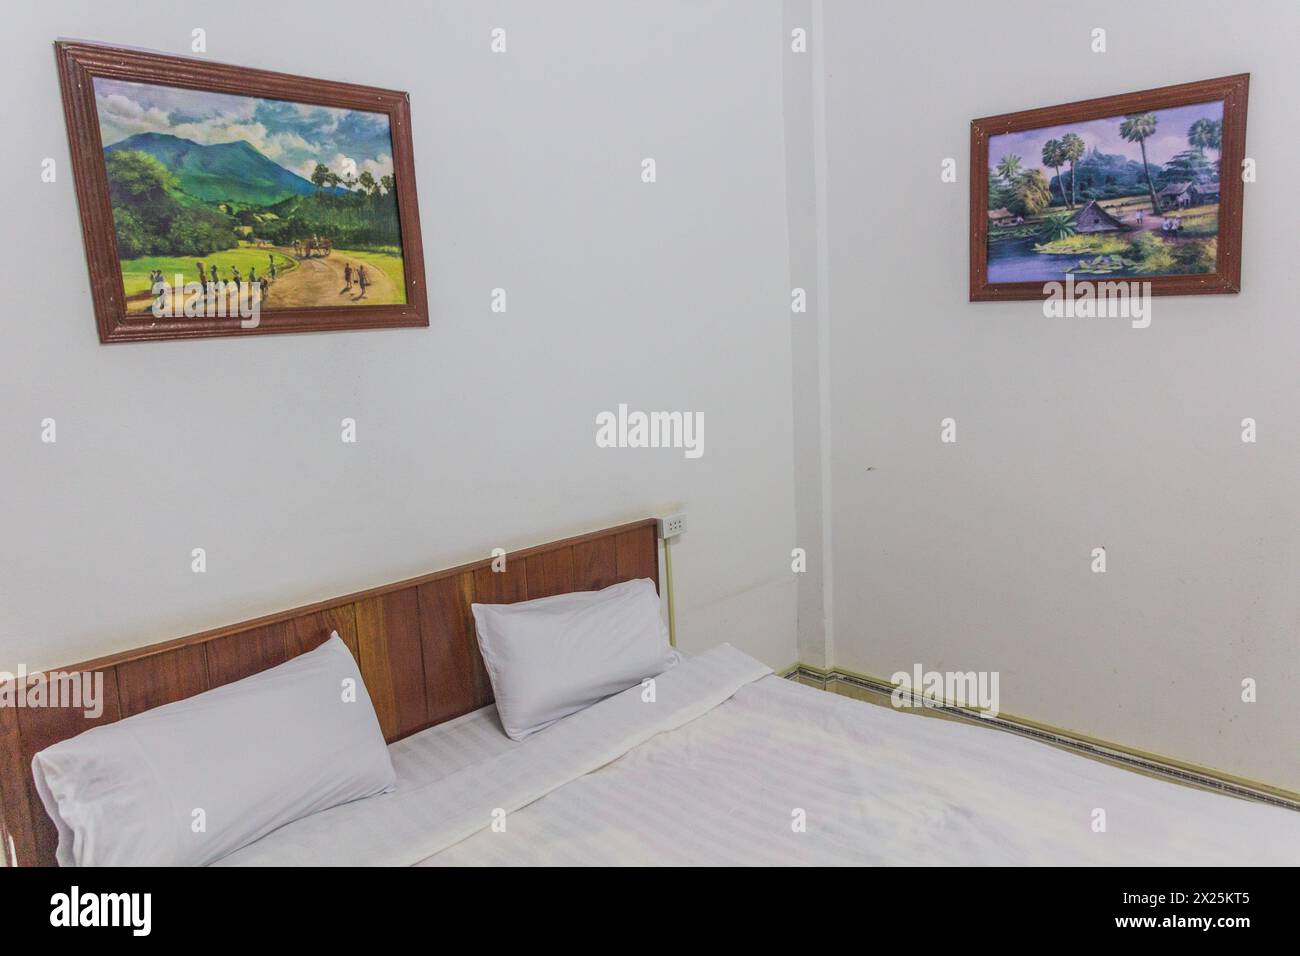 PHONGSALI, LAOS - NOVEMBER 20, 2019: Cheap hotel room in Phongsali, Laos Stock Photo